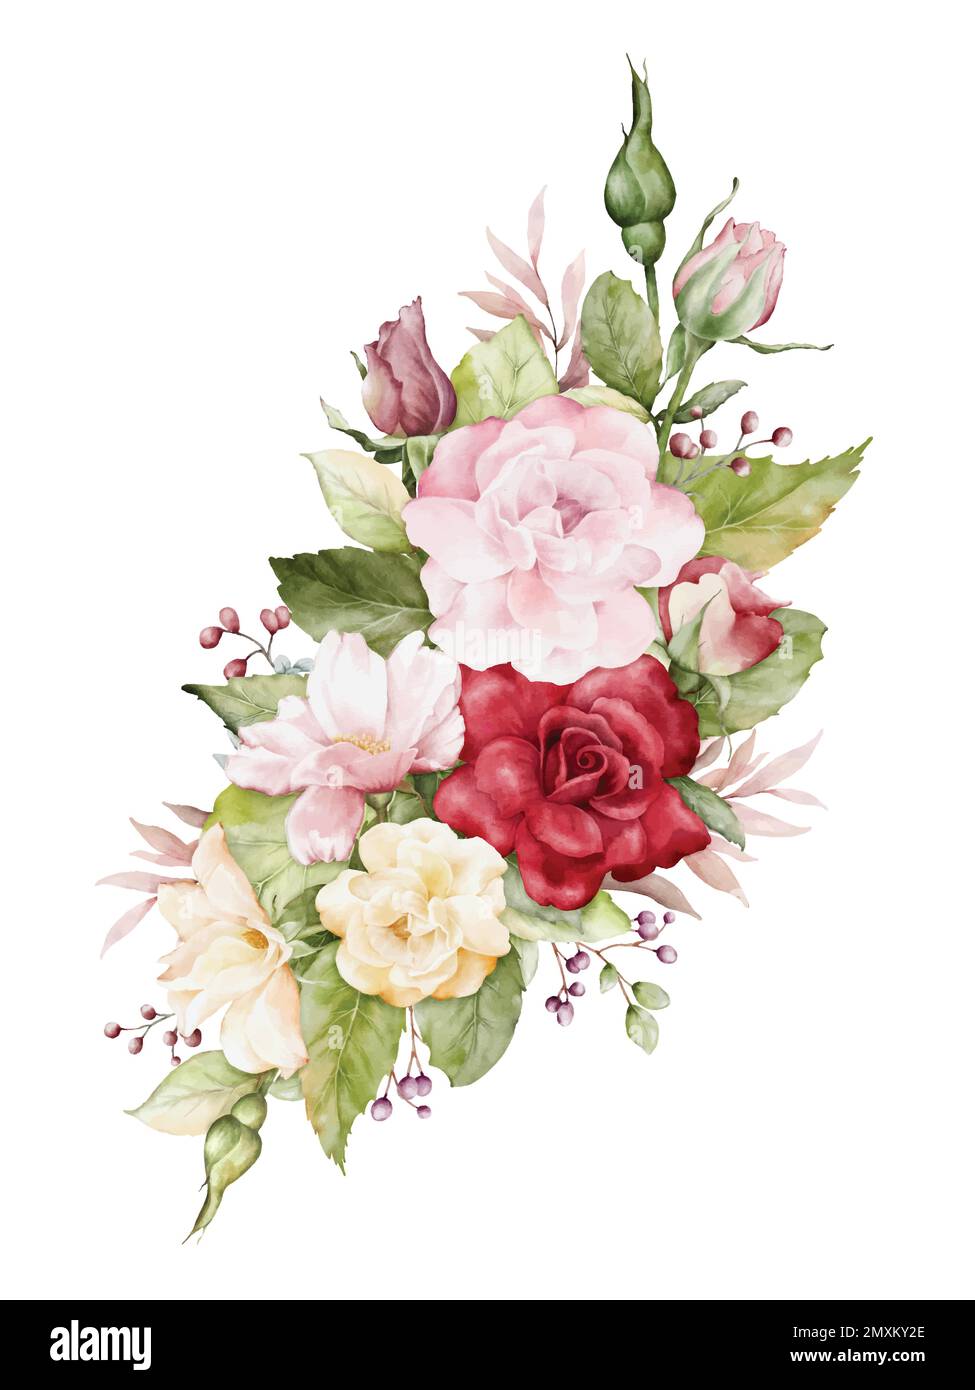 Aquarelle Arrangements mit Rosenblumen. Blumensträuße aus rosa, roten und gelben Rosen und Blätter für Hochzeits-, Valentinstag- oder Grußkarten. Botan Stock Vektor